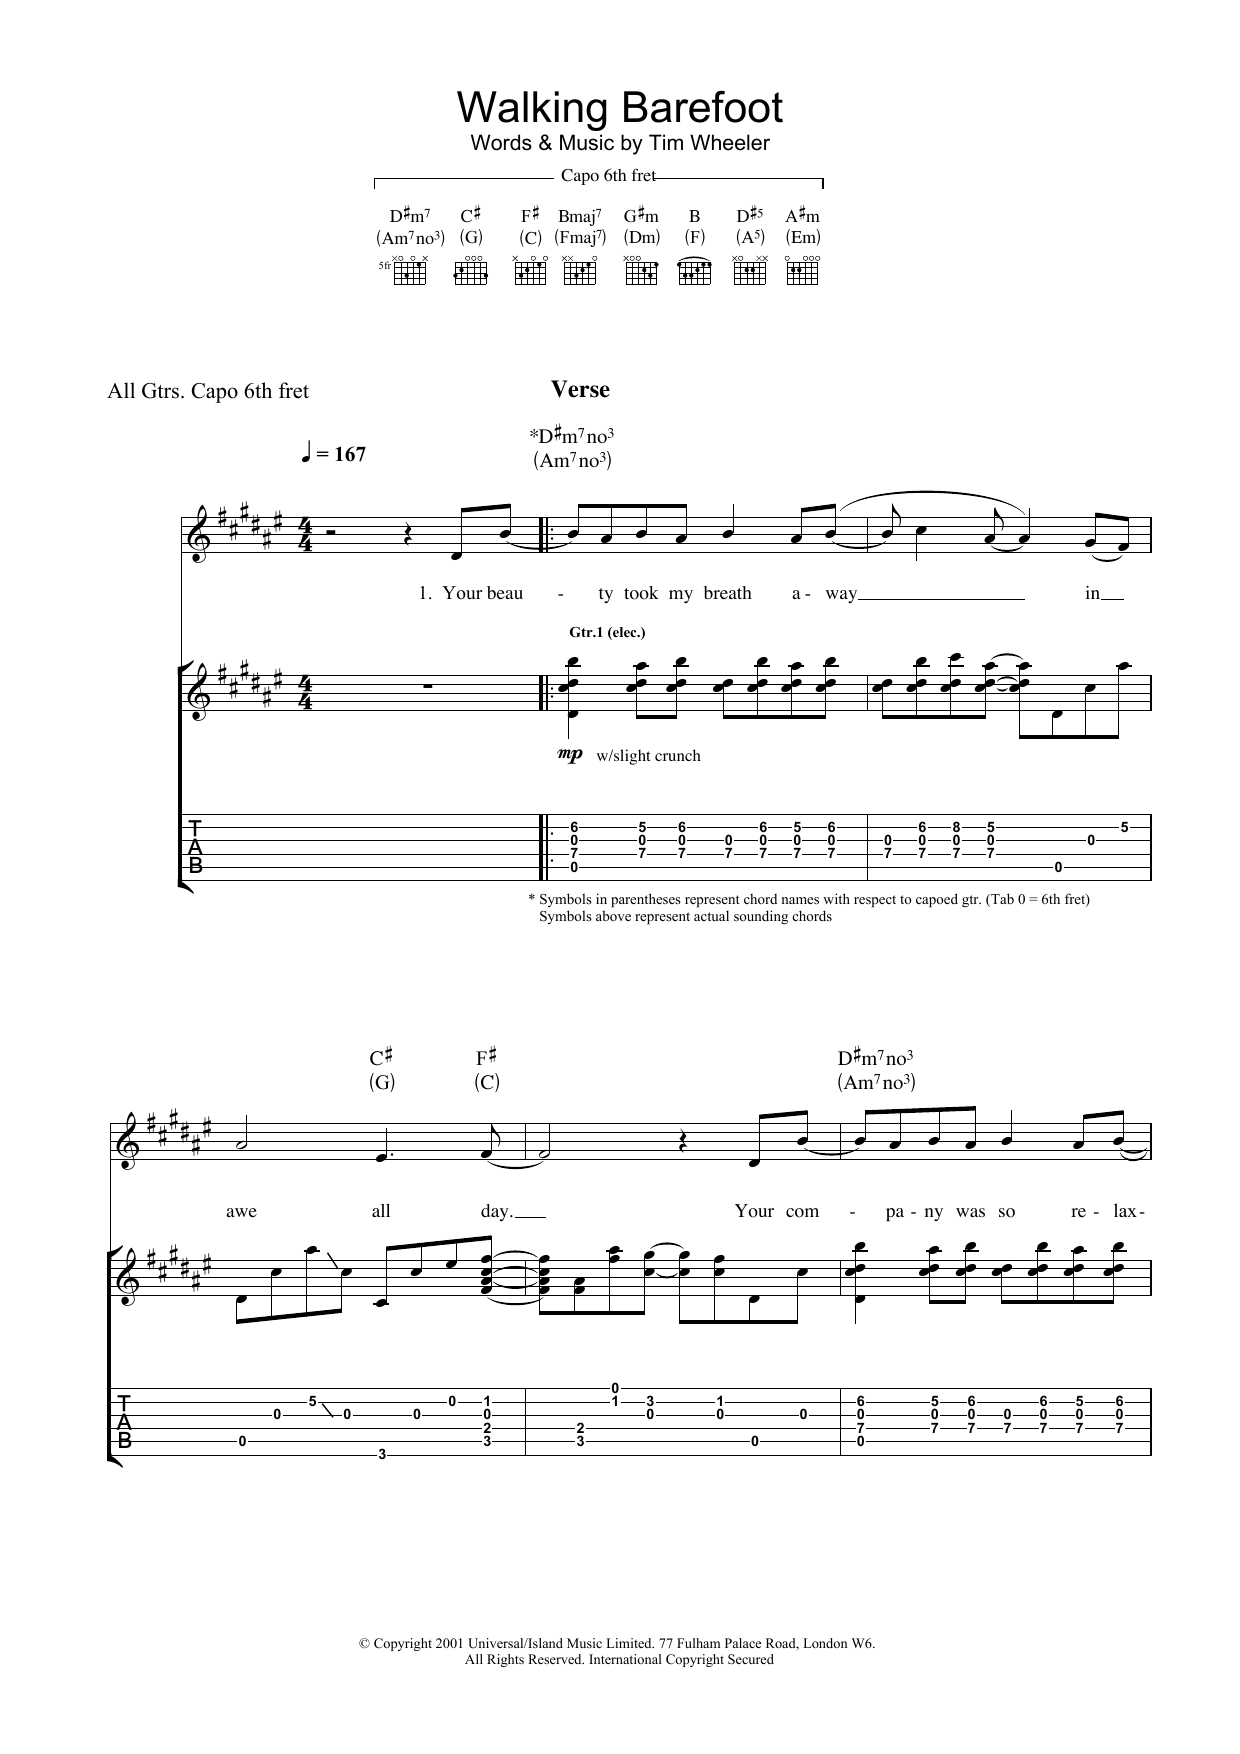 Ash Walking Barefoot Sheet Music Notes & Chords for Guitar Tab - Download or Print PDF